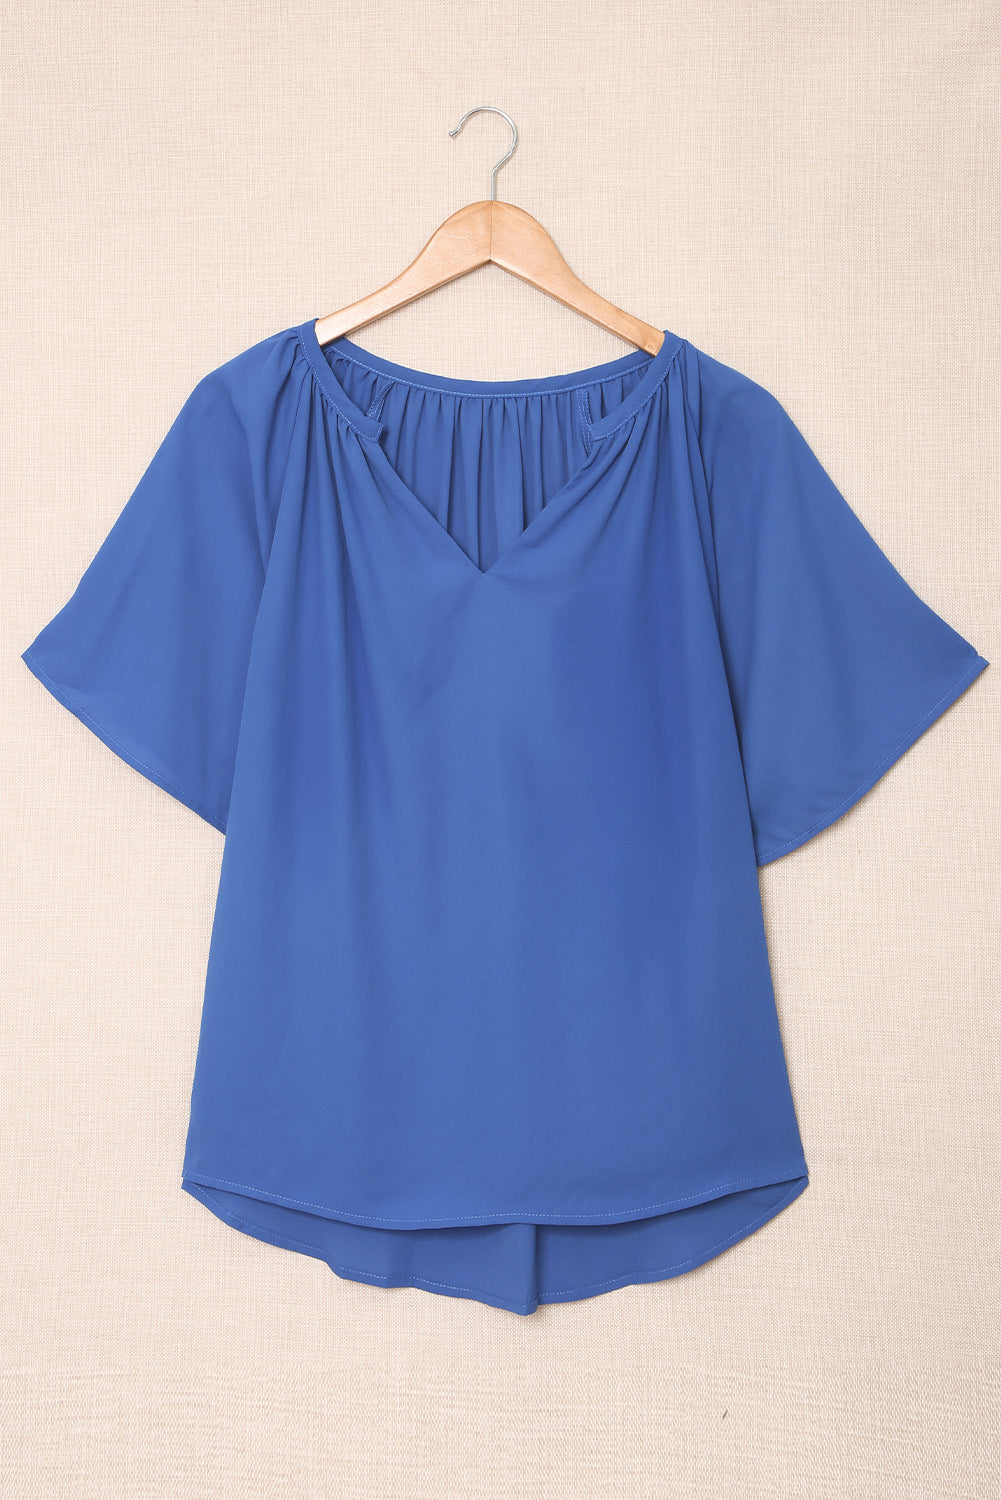 Blaue, plissierte, lockere Bluse mit geteiltem Ausschnitt